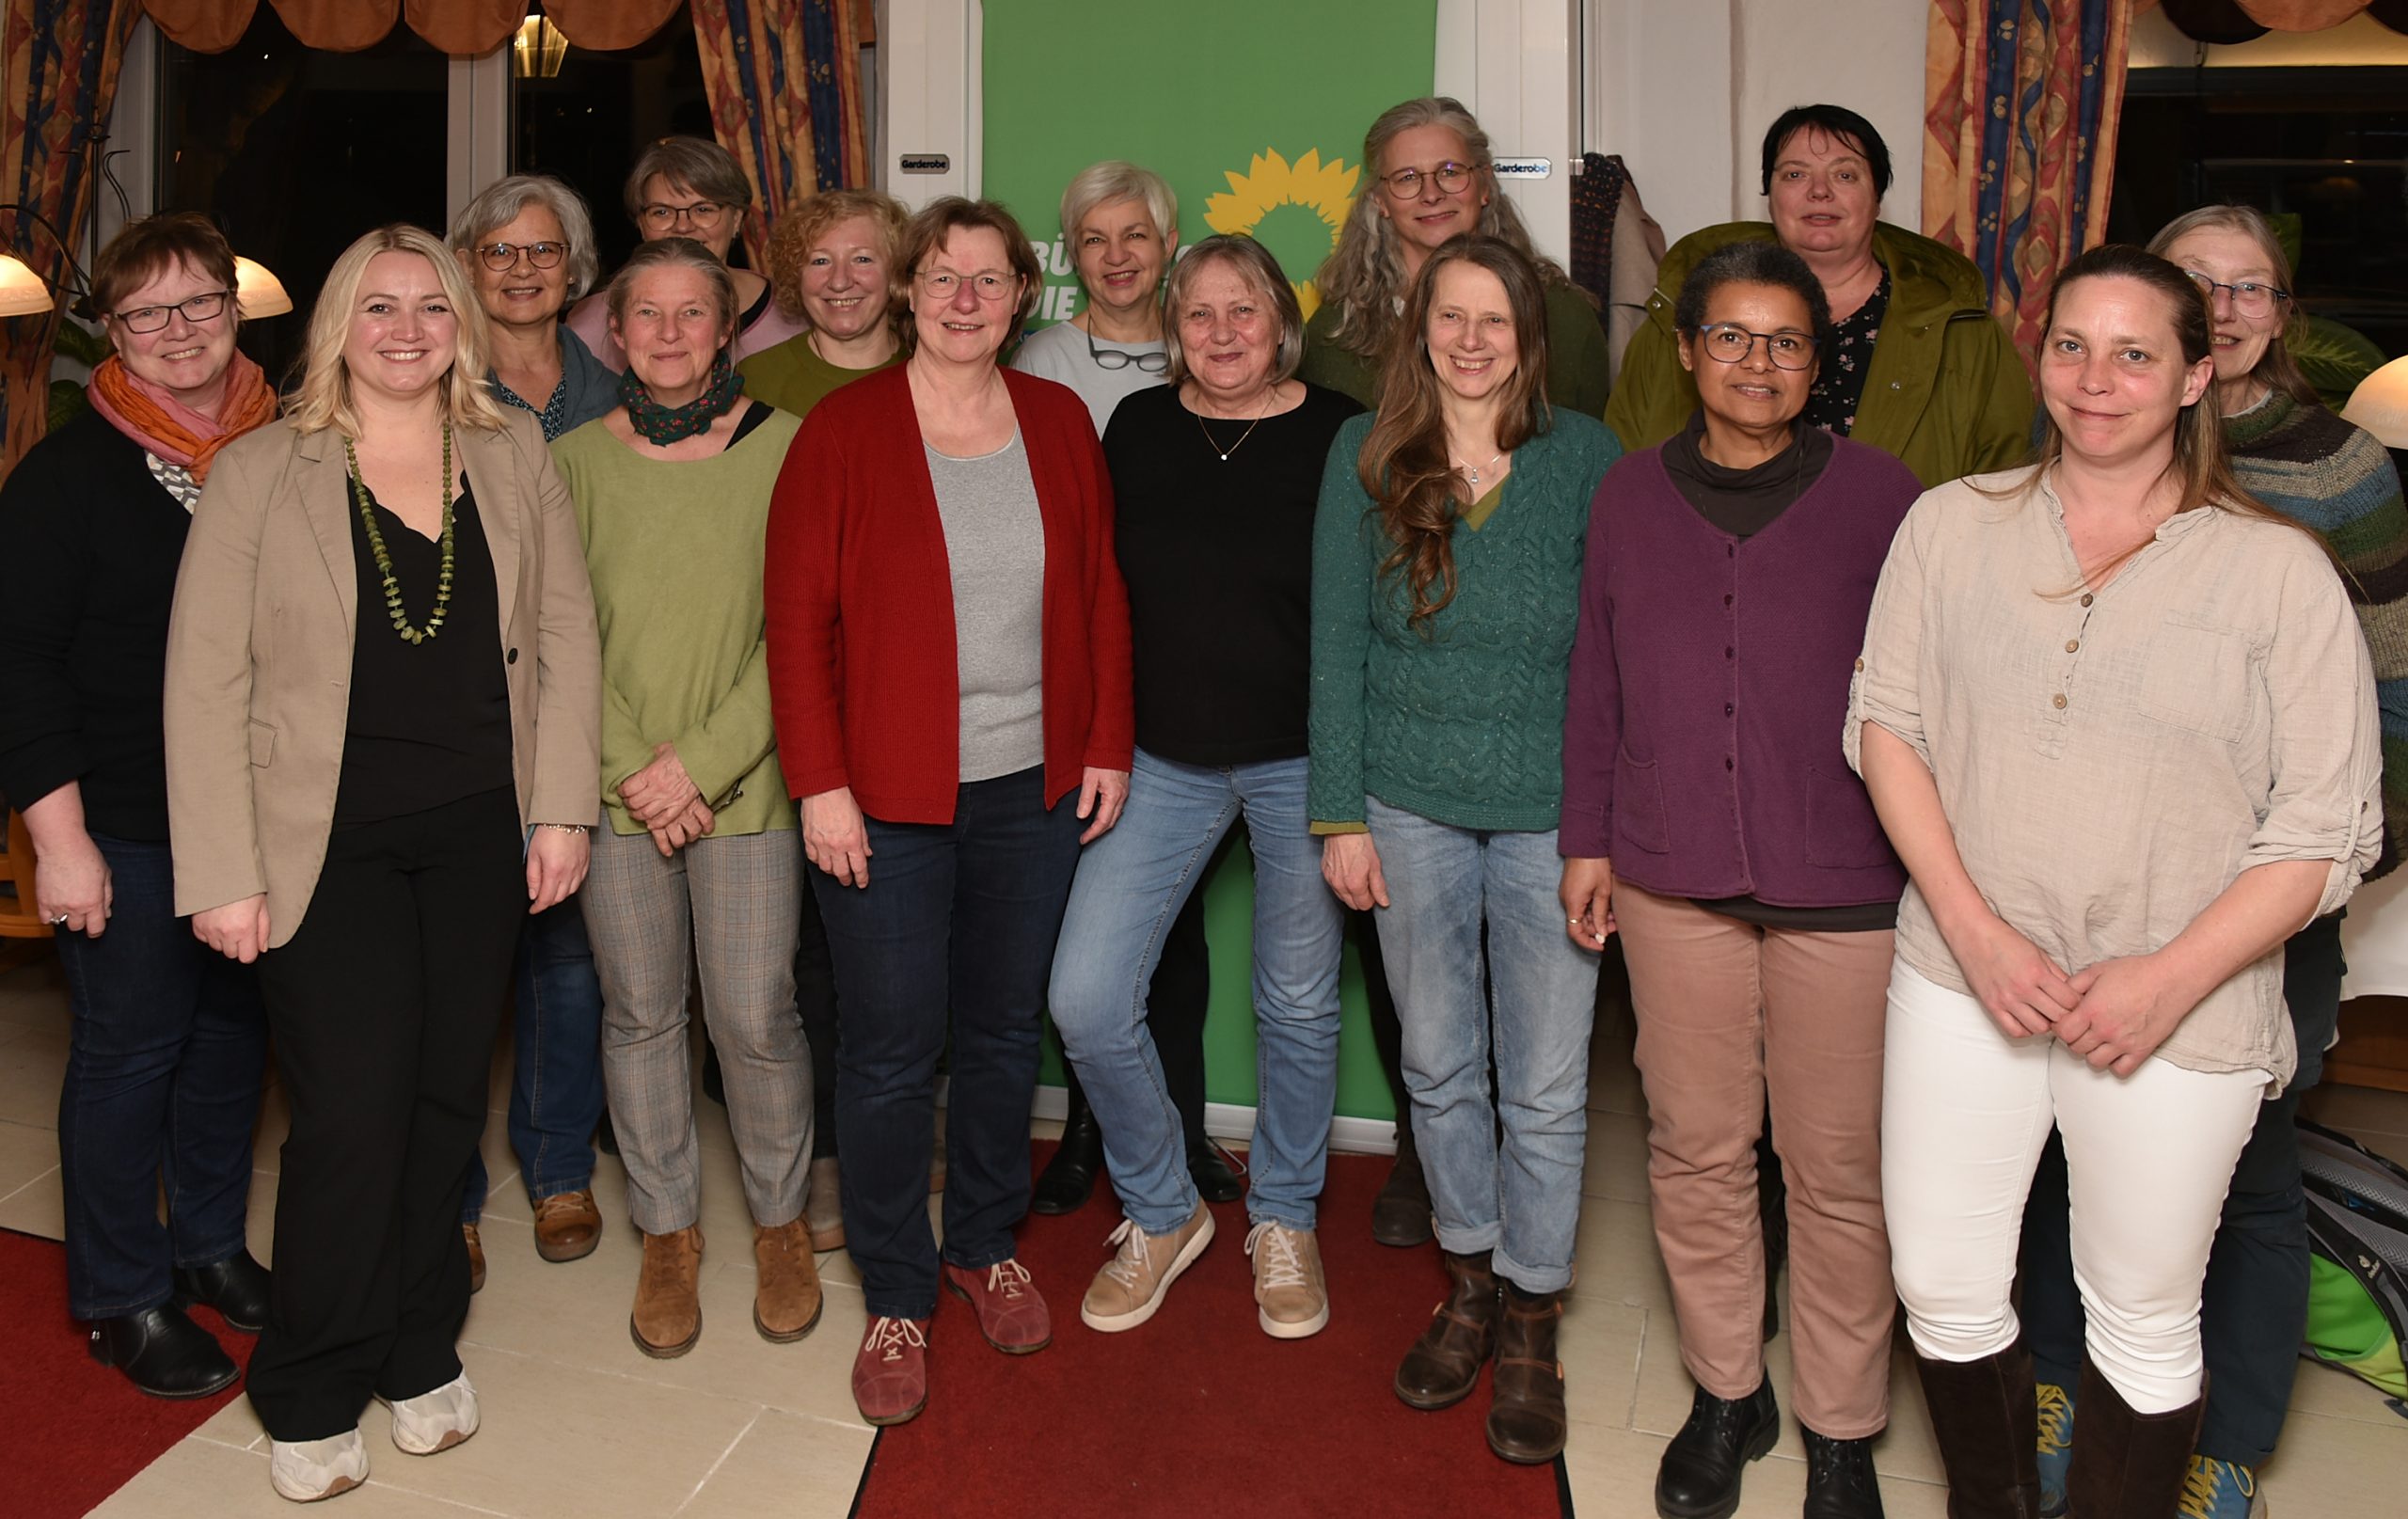 Der Frauenanteil bei den GRÜNEN im Kreis Ahrweiler beträgt 44 %. Viele weibliche Parteimitglieder kandidieren bei der Kommunalwahl 2024 für einen oder mehrere Räte im Kreis – unter anderem auch fast alle der auf dem Foto versammelten Frauen.